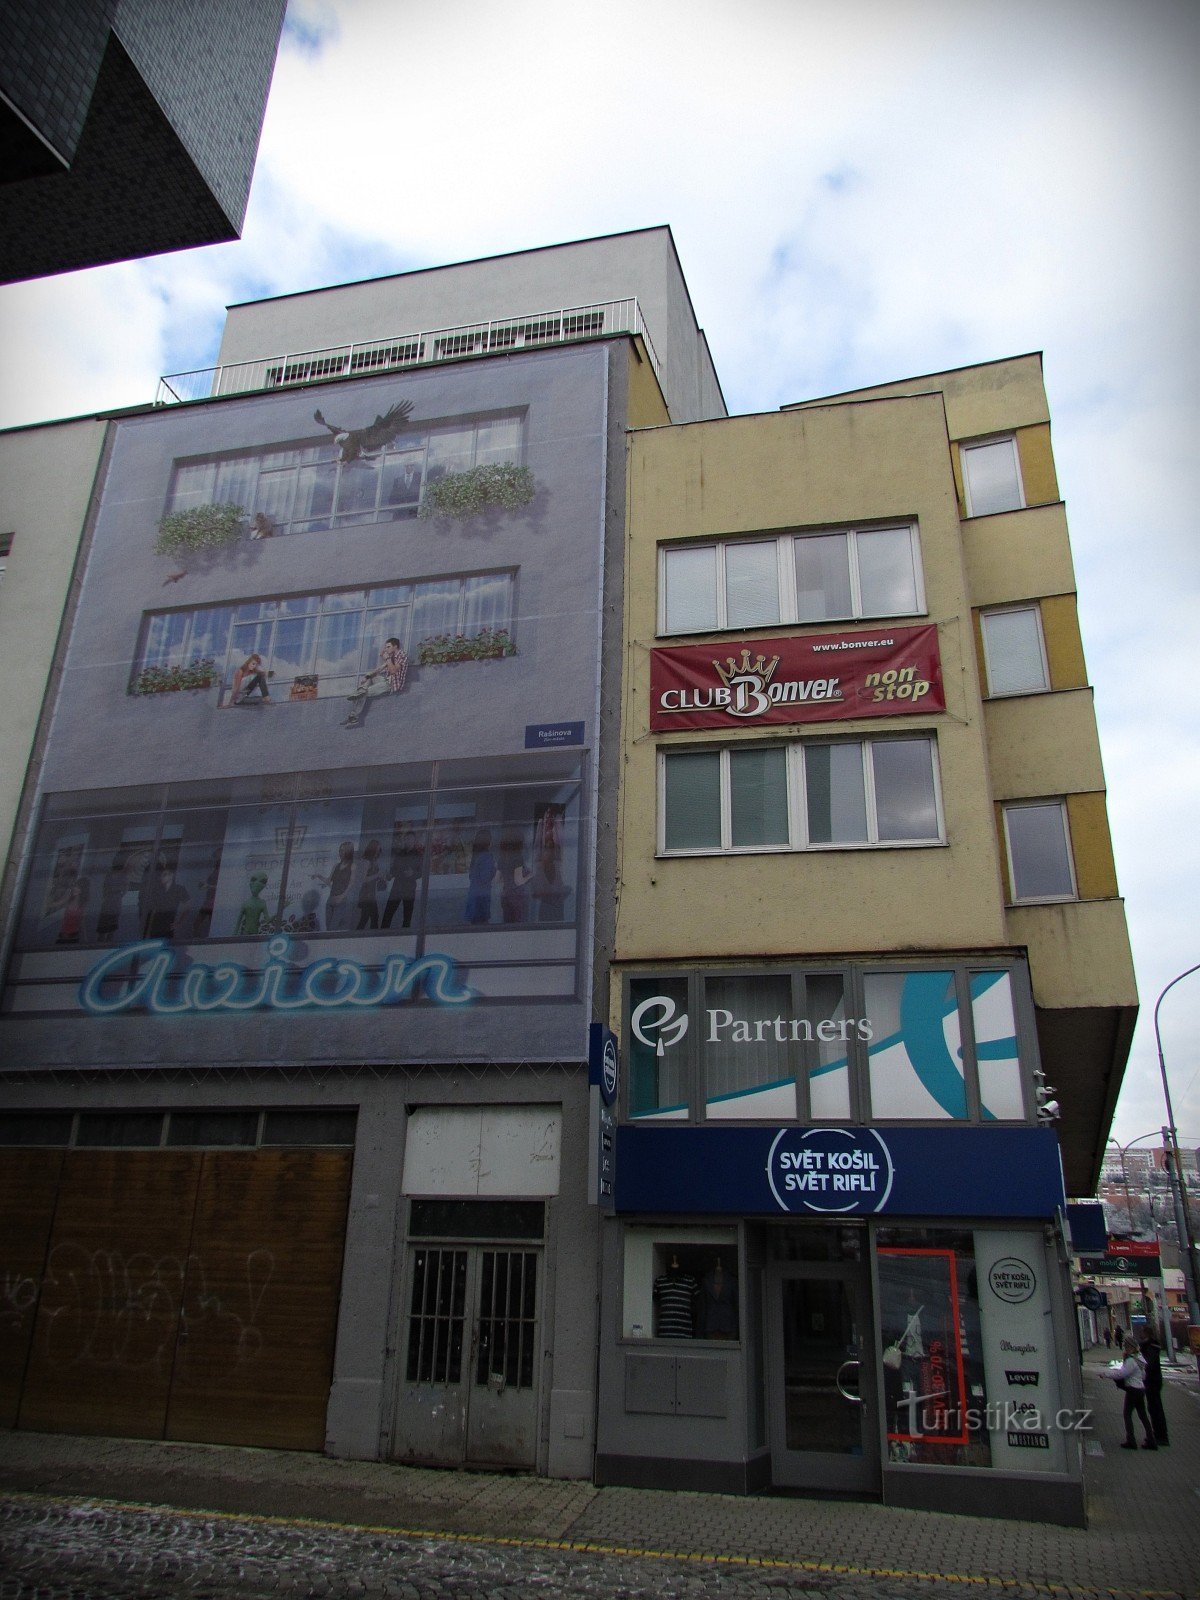 ズリーン - E. Pelčák の商業および住宅用建物